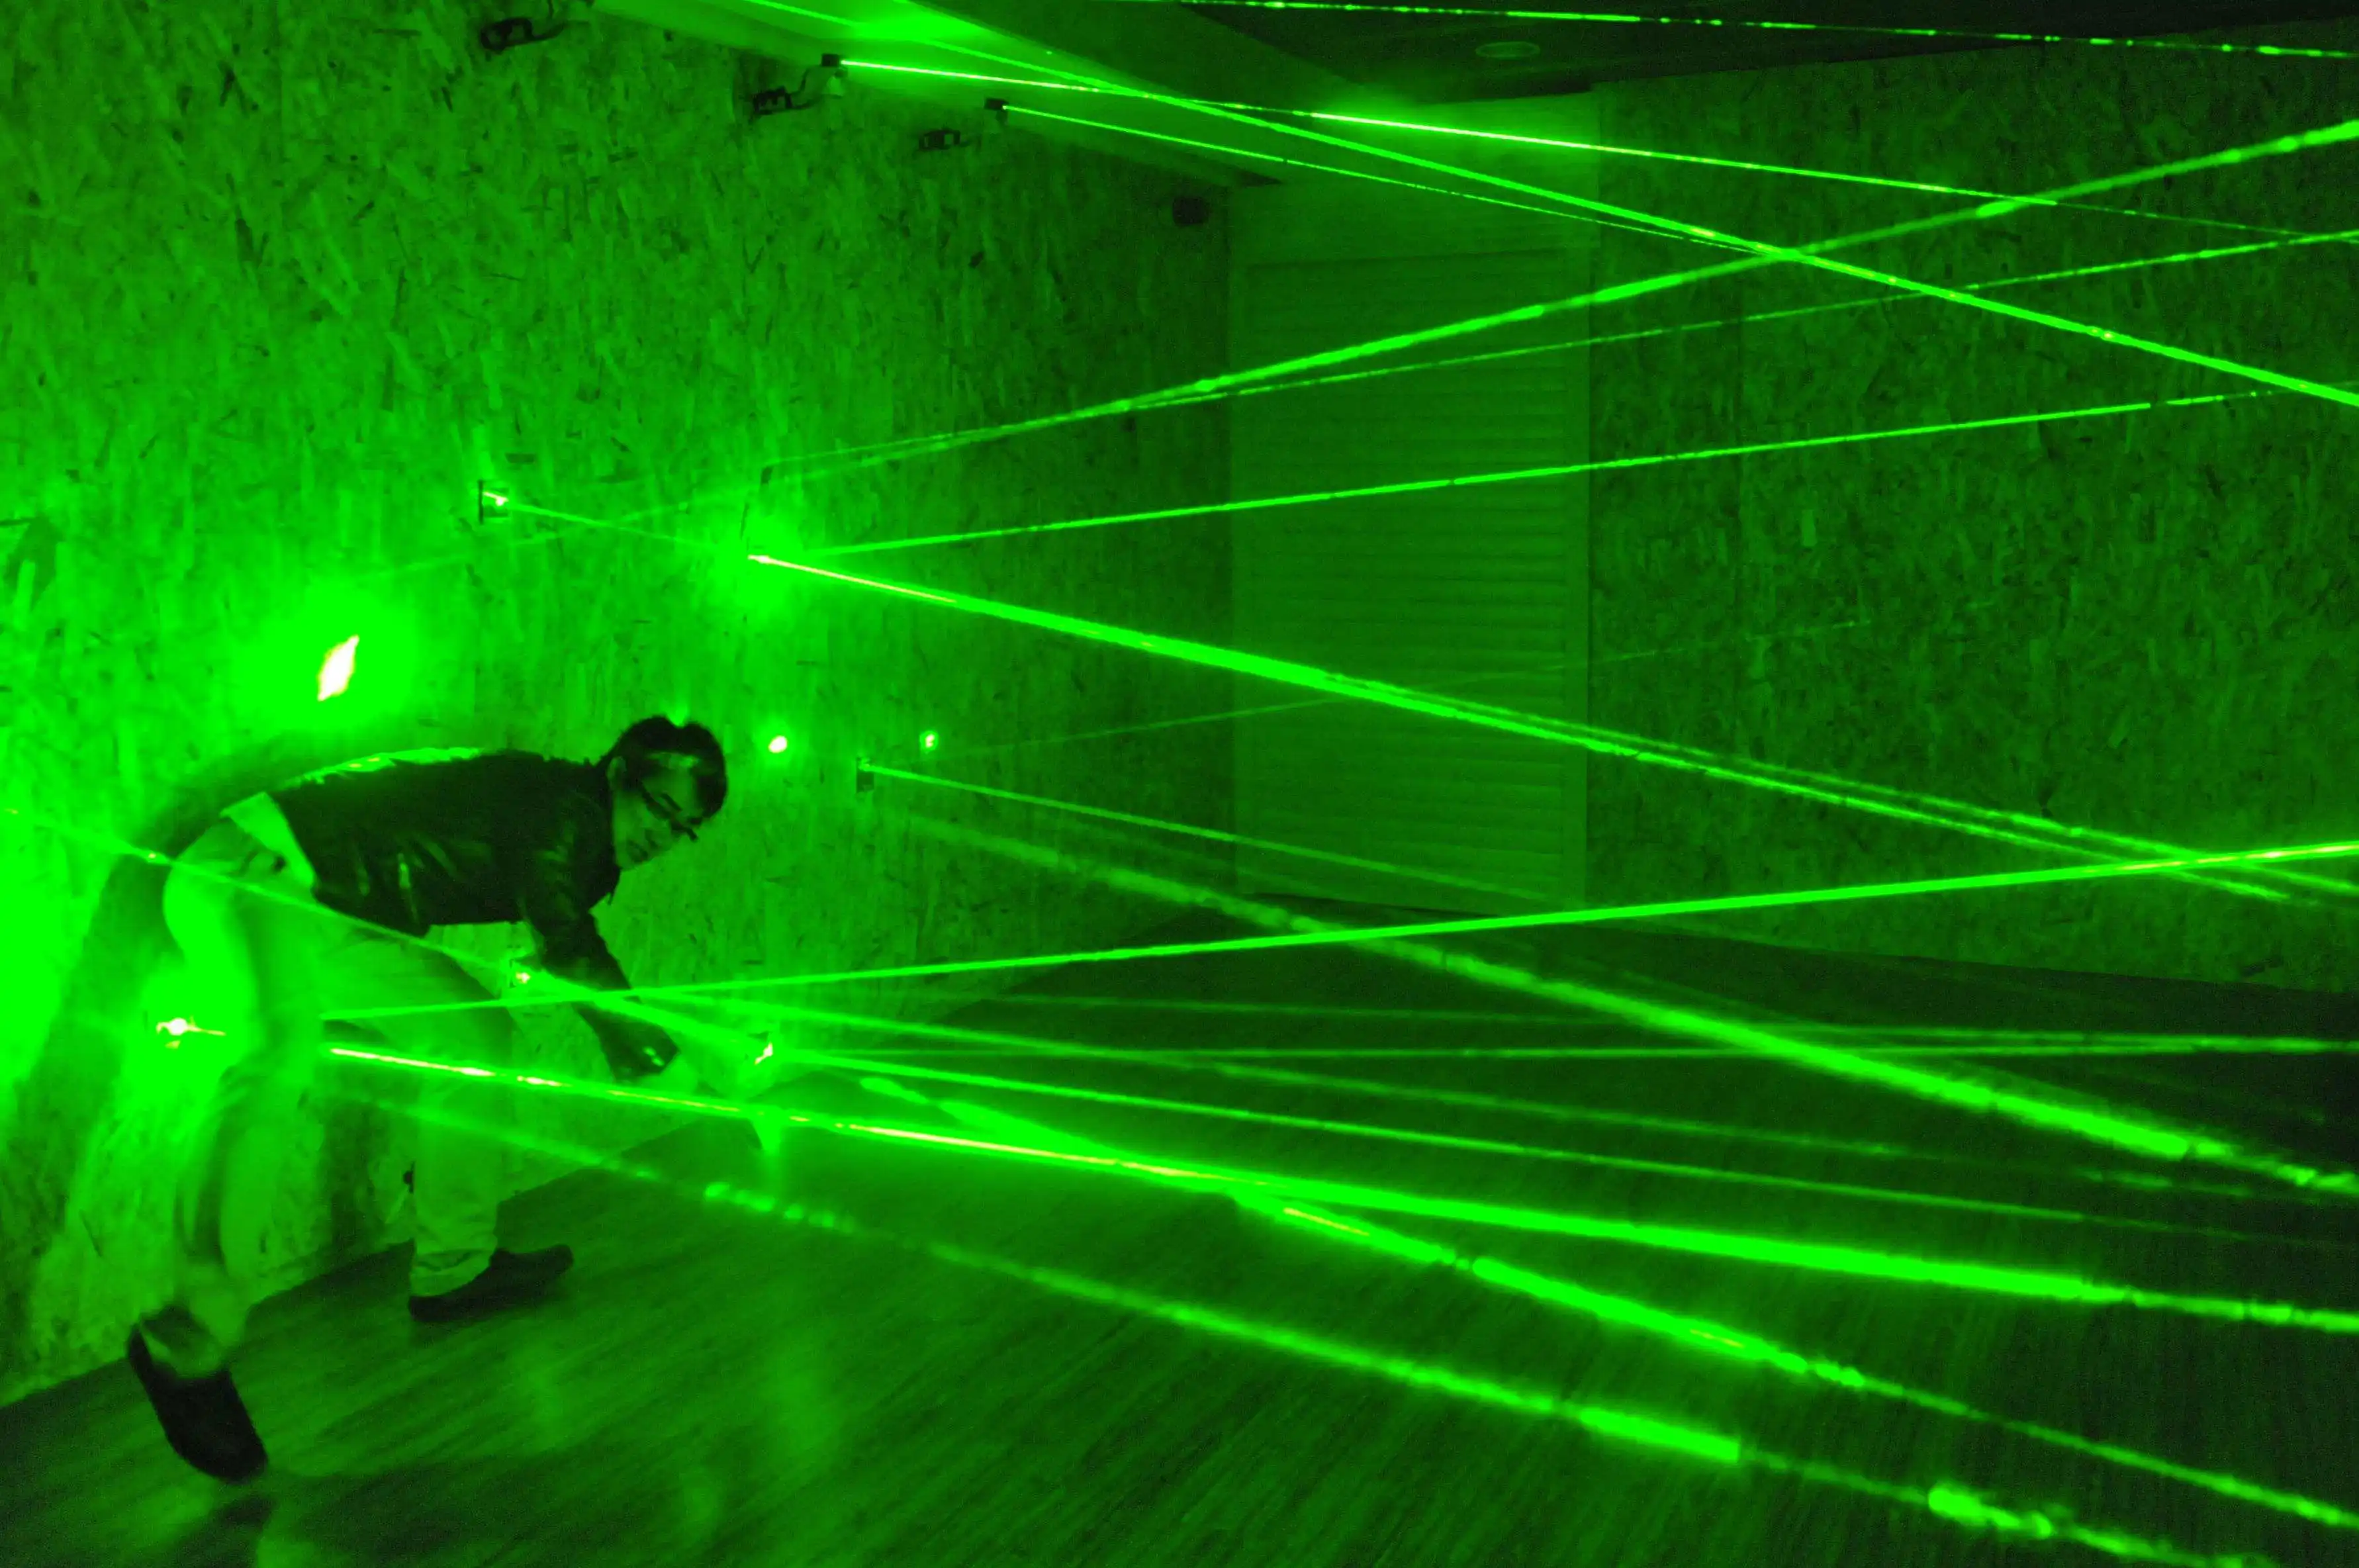 laser array for escape room game adventurer prop laser maze Chamber secrets game intresting and risking green laser game